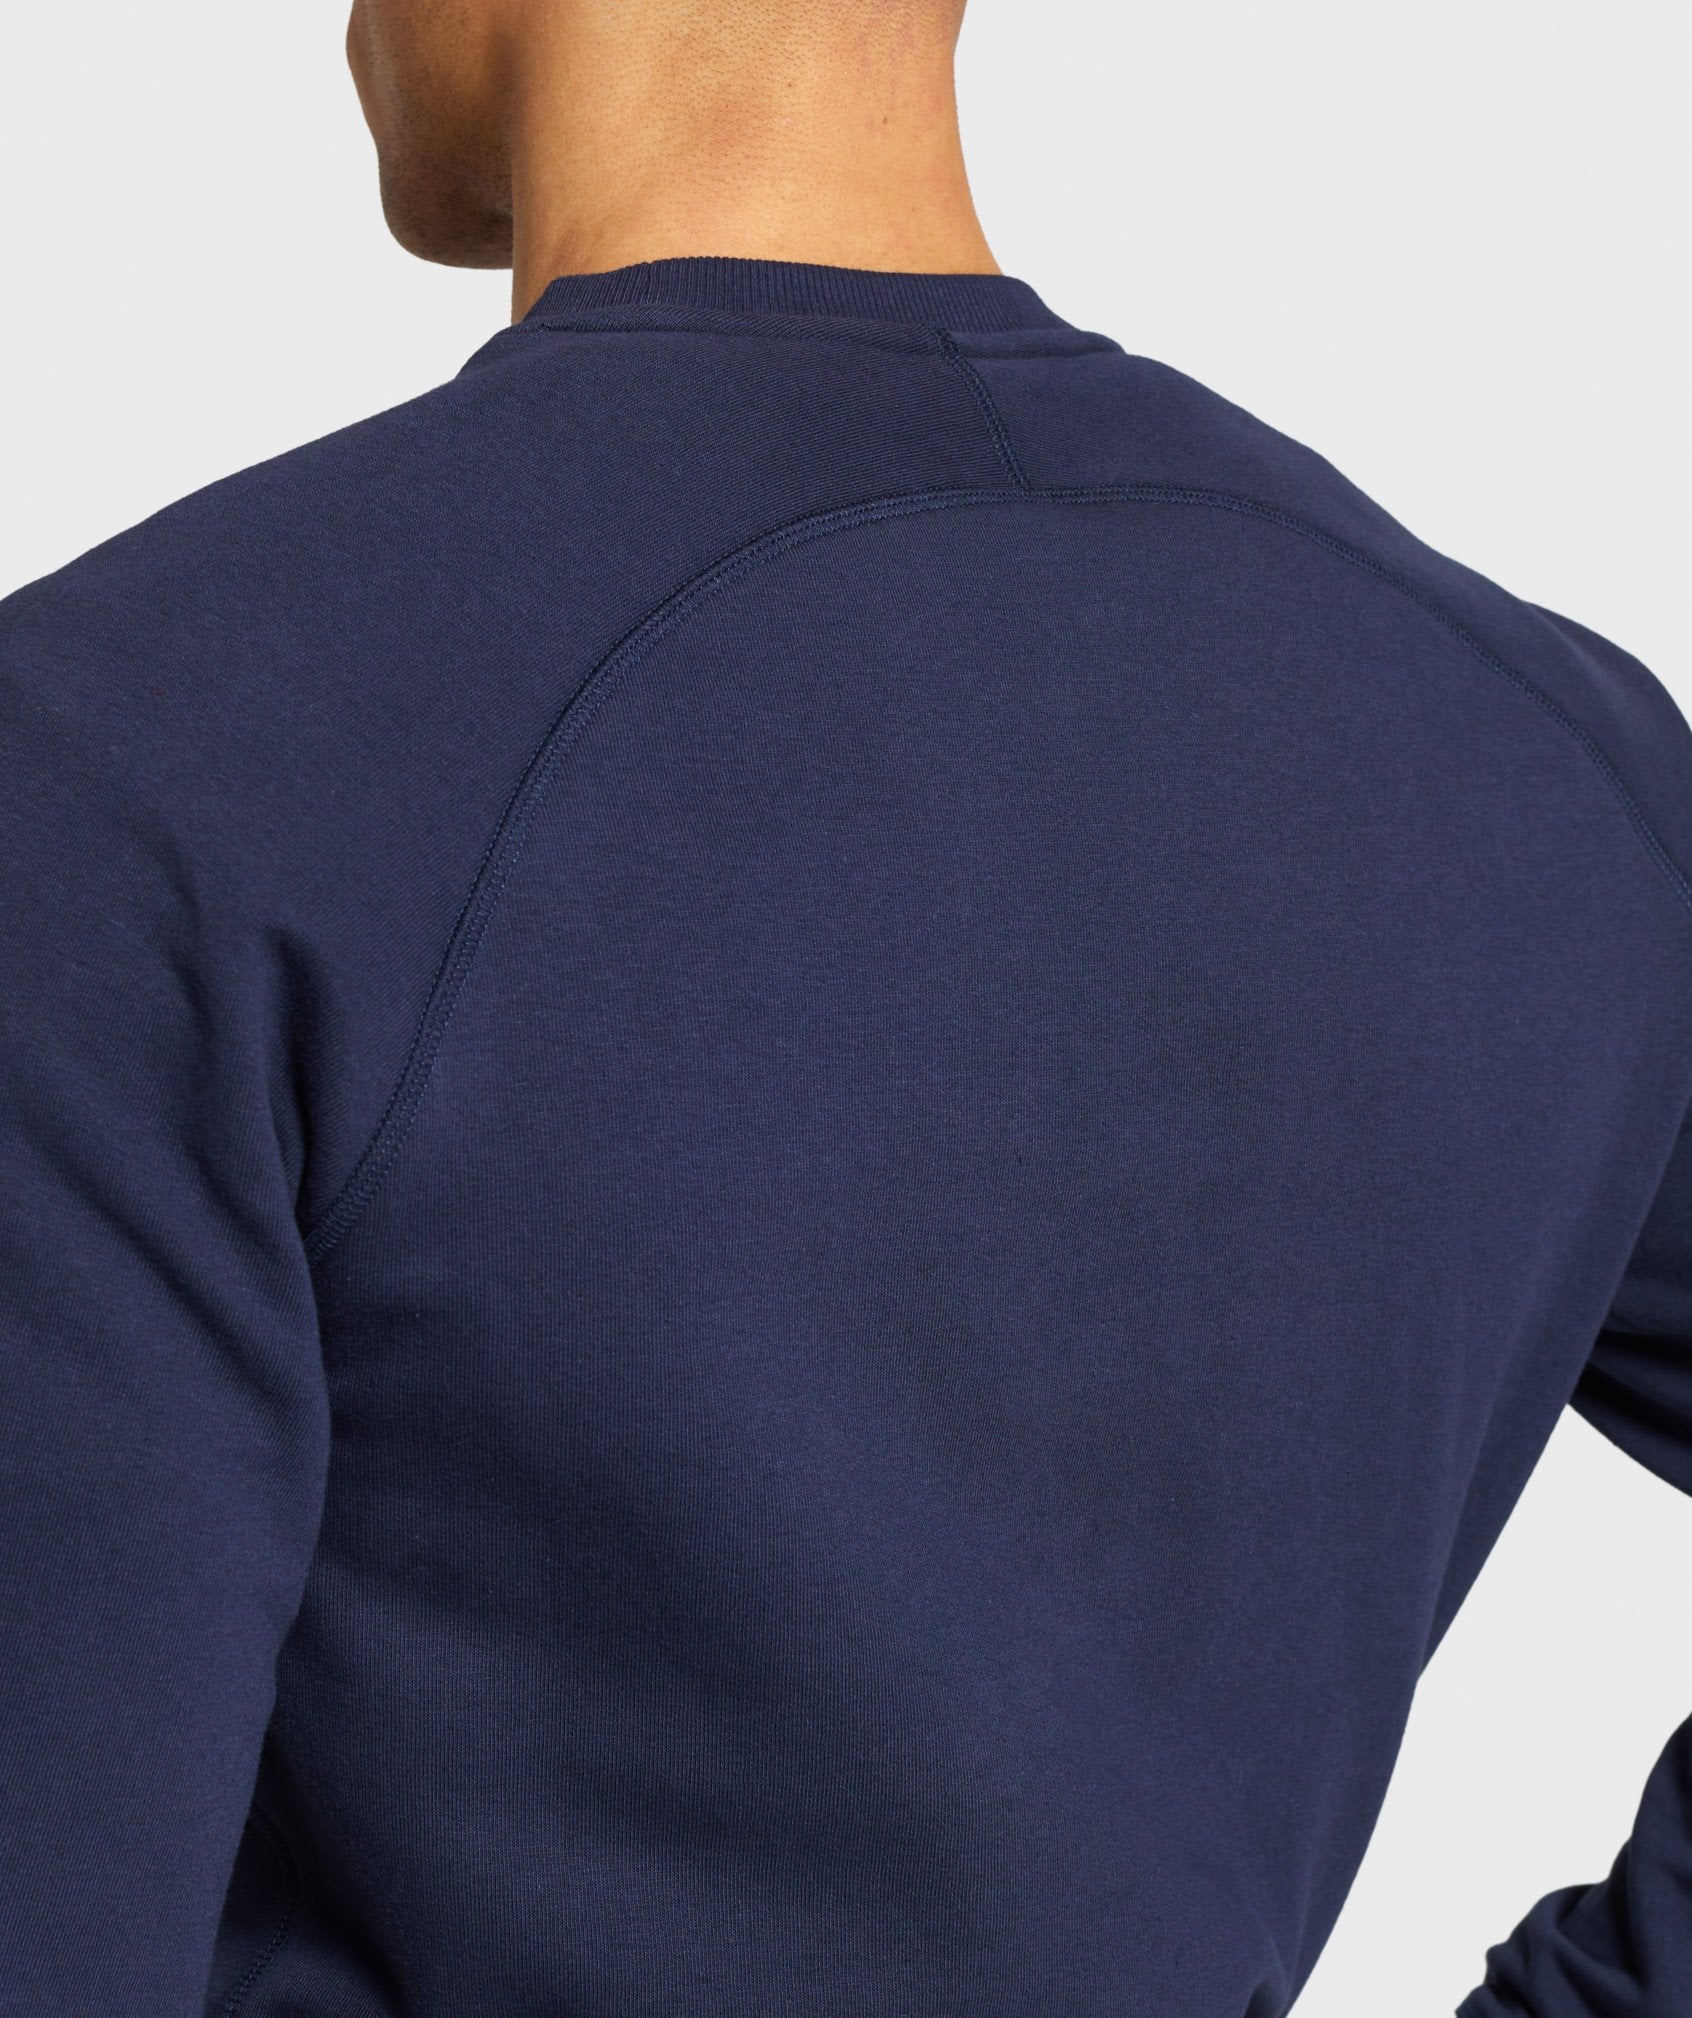 Gymshark Crest Sweatshirt - Dark Blue Image D1